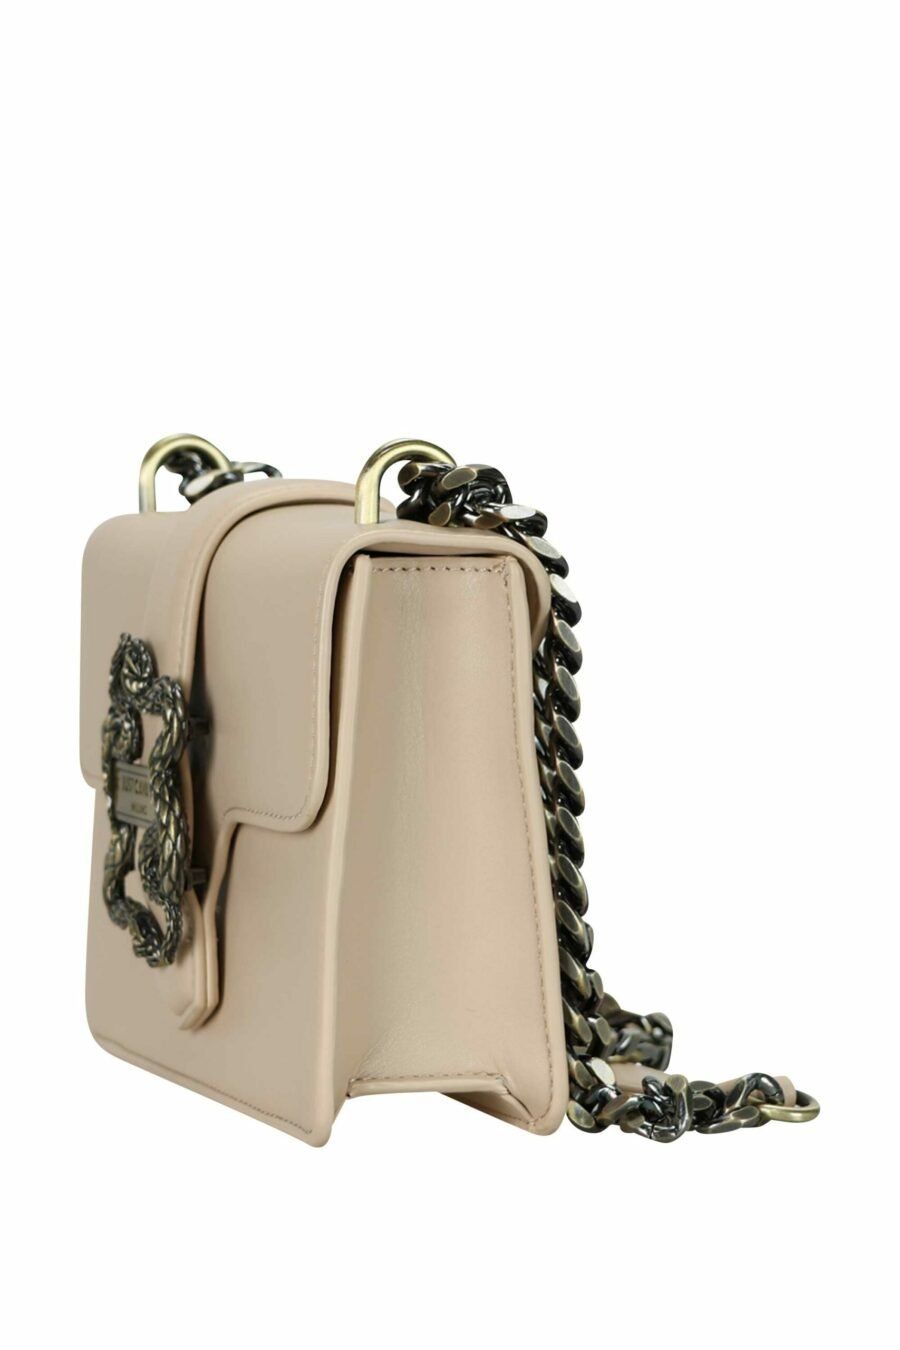 Beige shoulder bag with snake buckle - 8052672641595 1 scaled